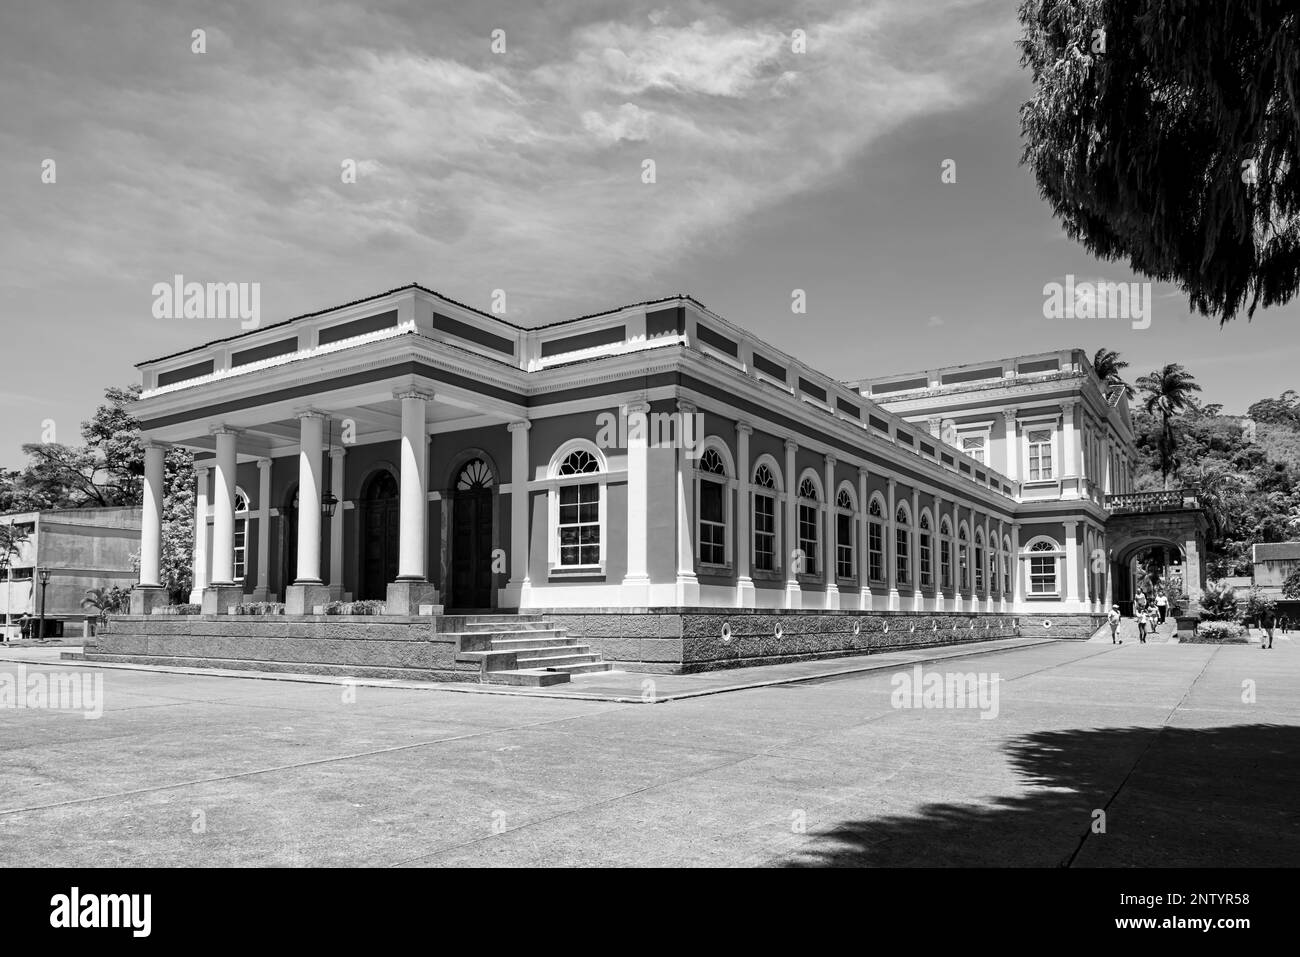 Photo en noir et blanc du musée impérial de Petropolis, ville historique de l'État de Rio de Janeiro au Brésil Banque D'Images